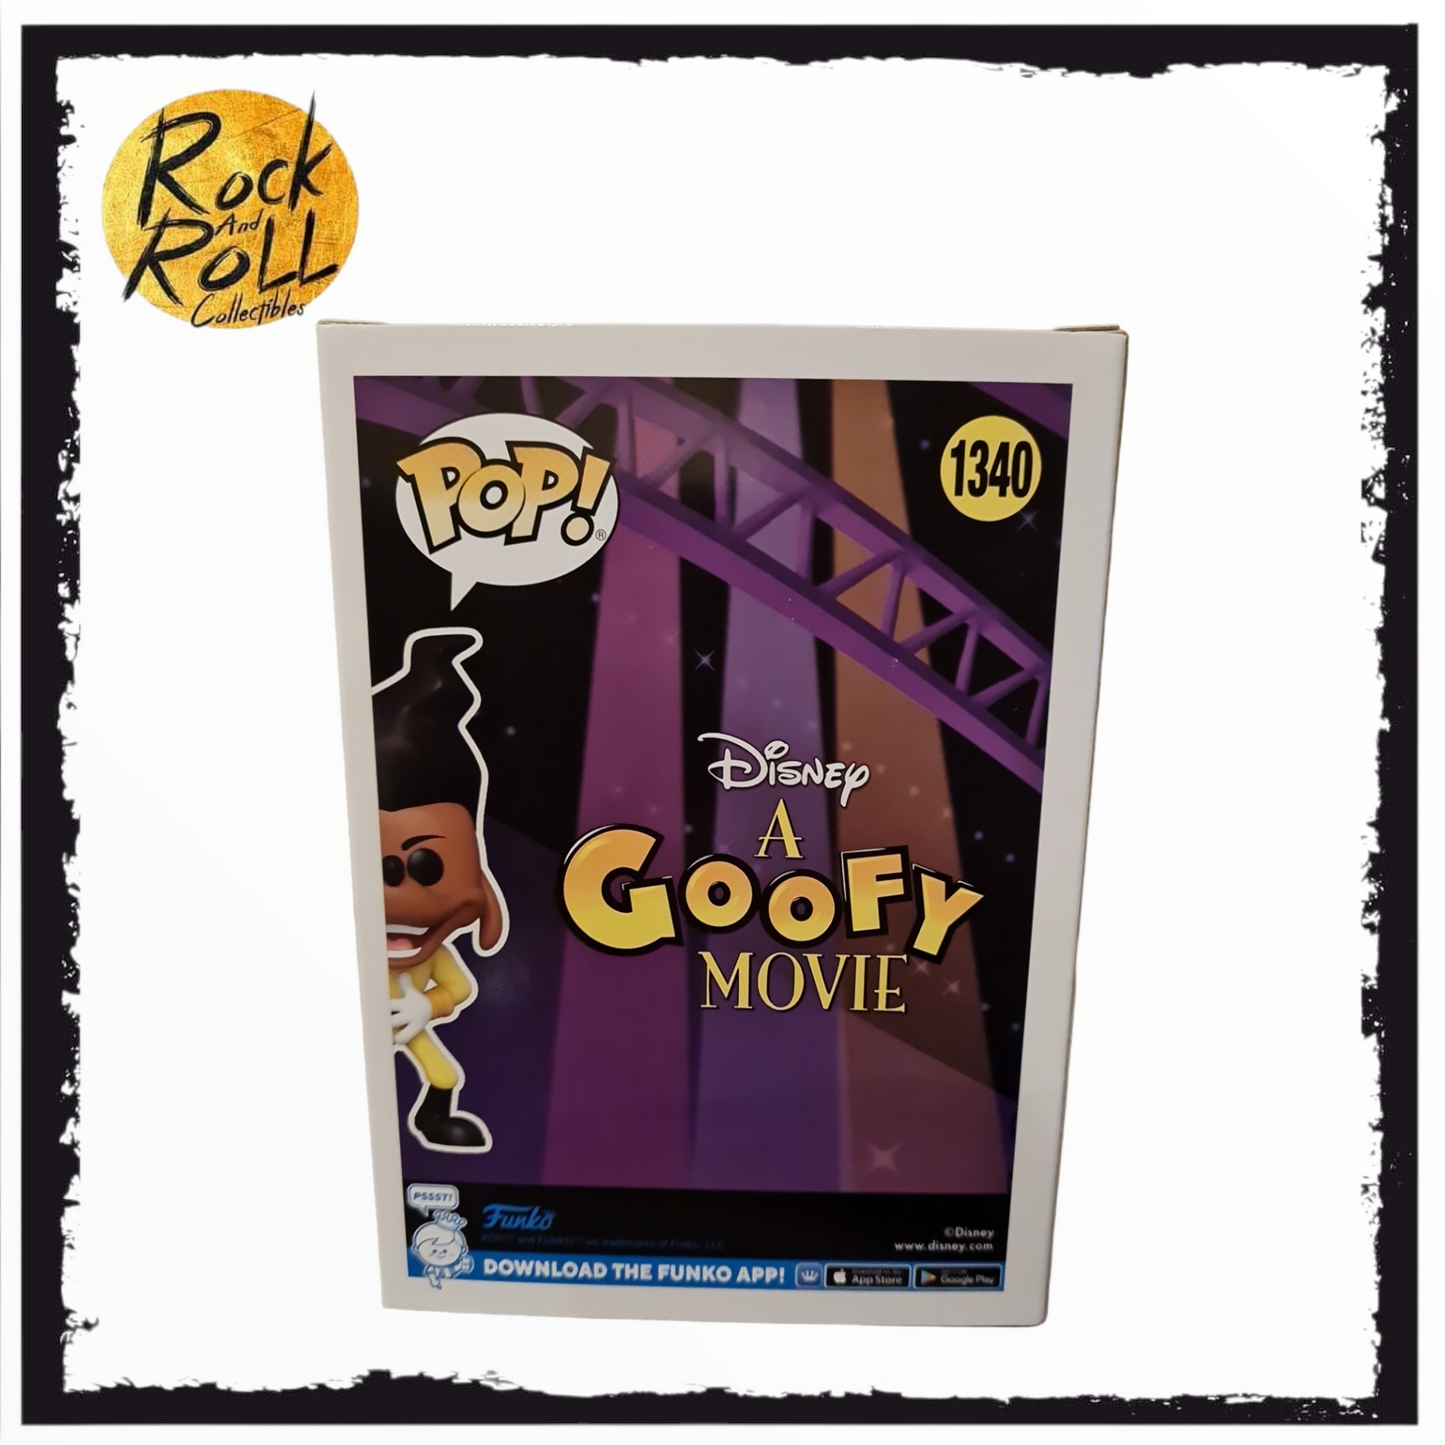 (Not Mint Box) A Goofy Movie - Powerline (Dancing) Funko Pop! #1340 2013 Wondercon Official Sticker